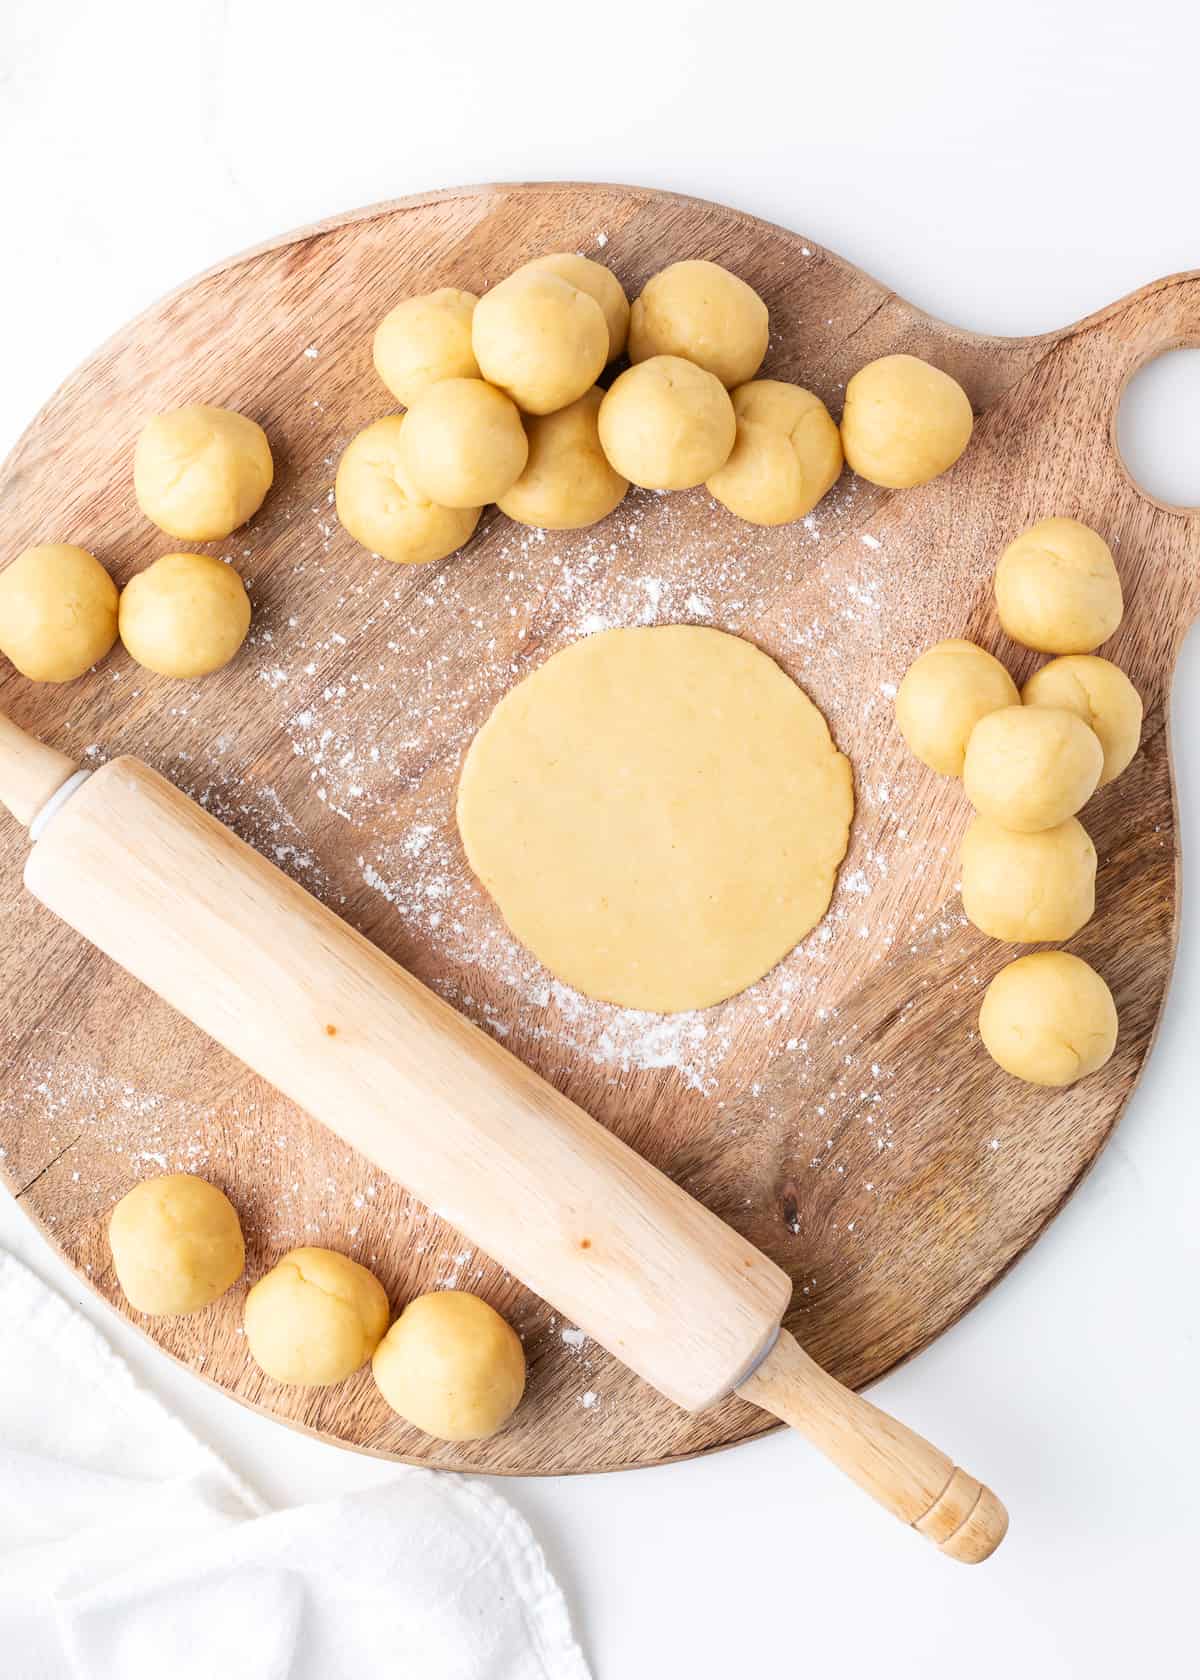 Rolling empanada dough on wooden board.